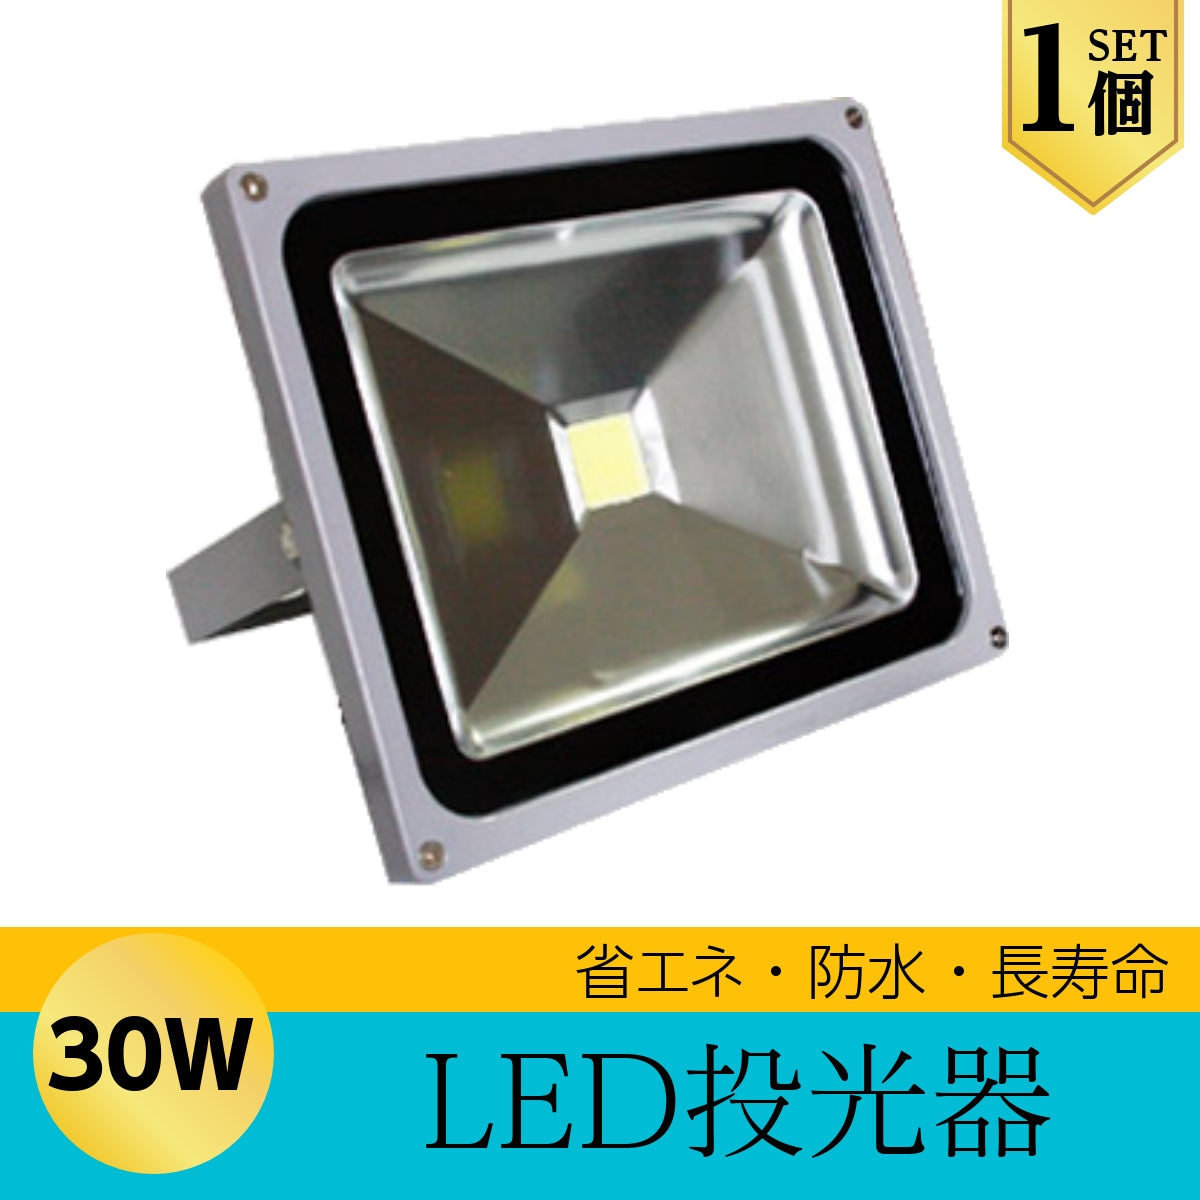 安い高評価投光器 300W ハイパワー 防水 広角 省エネ LED PSE 1年保証 作業用照明一般